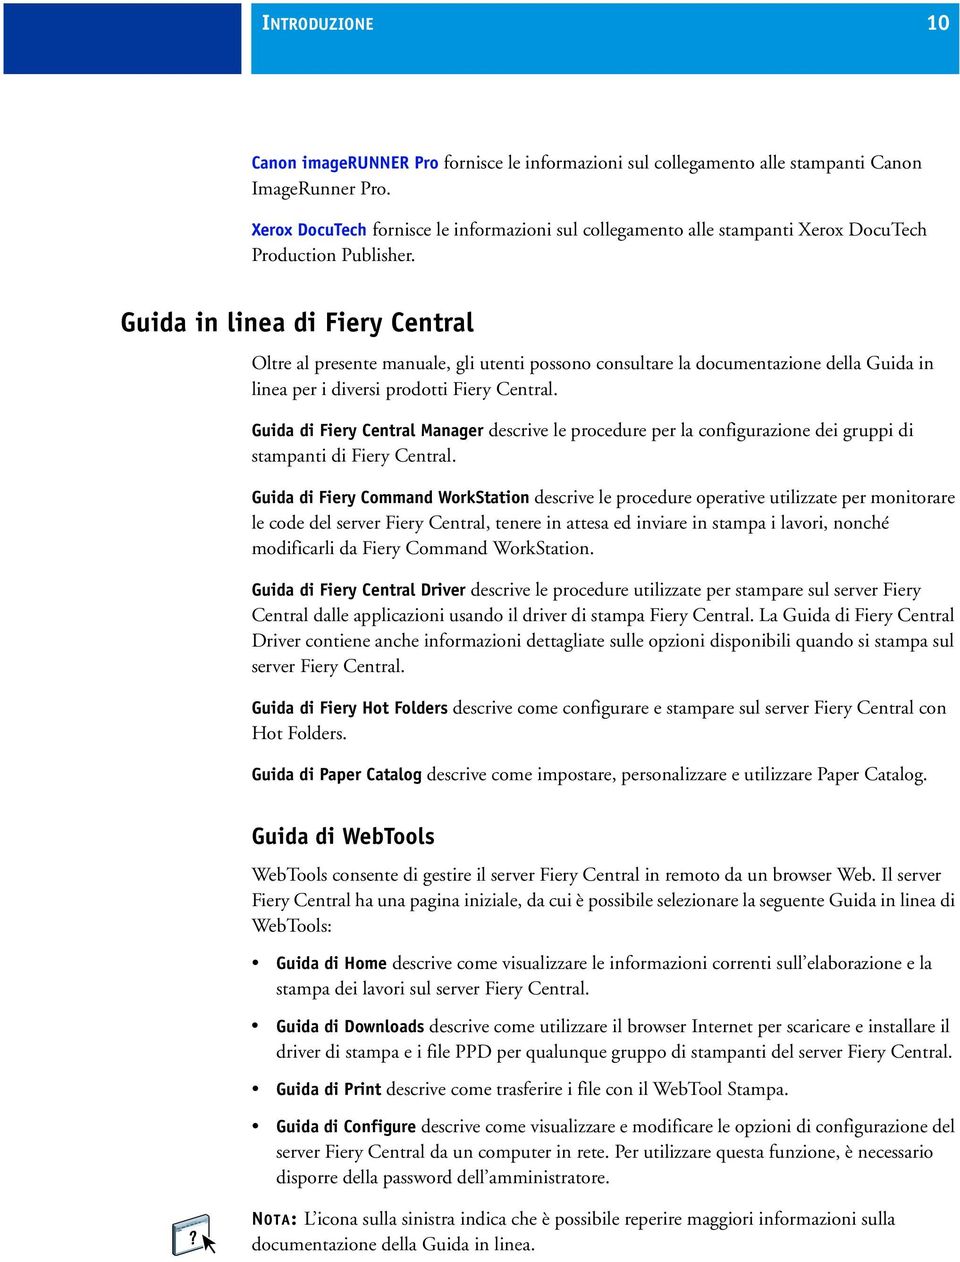 Guida in linea di Fiery Central Oltre al presente manuale, gli utenti possono consultare la documentazione della Guida in linea per i diversi prodotti Fiery Central.